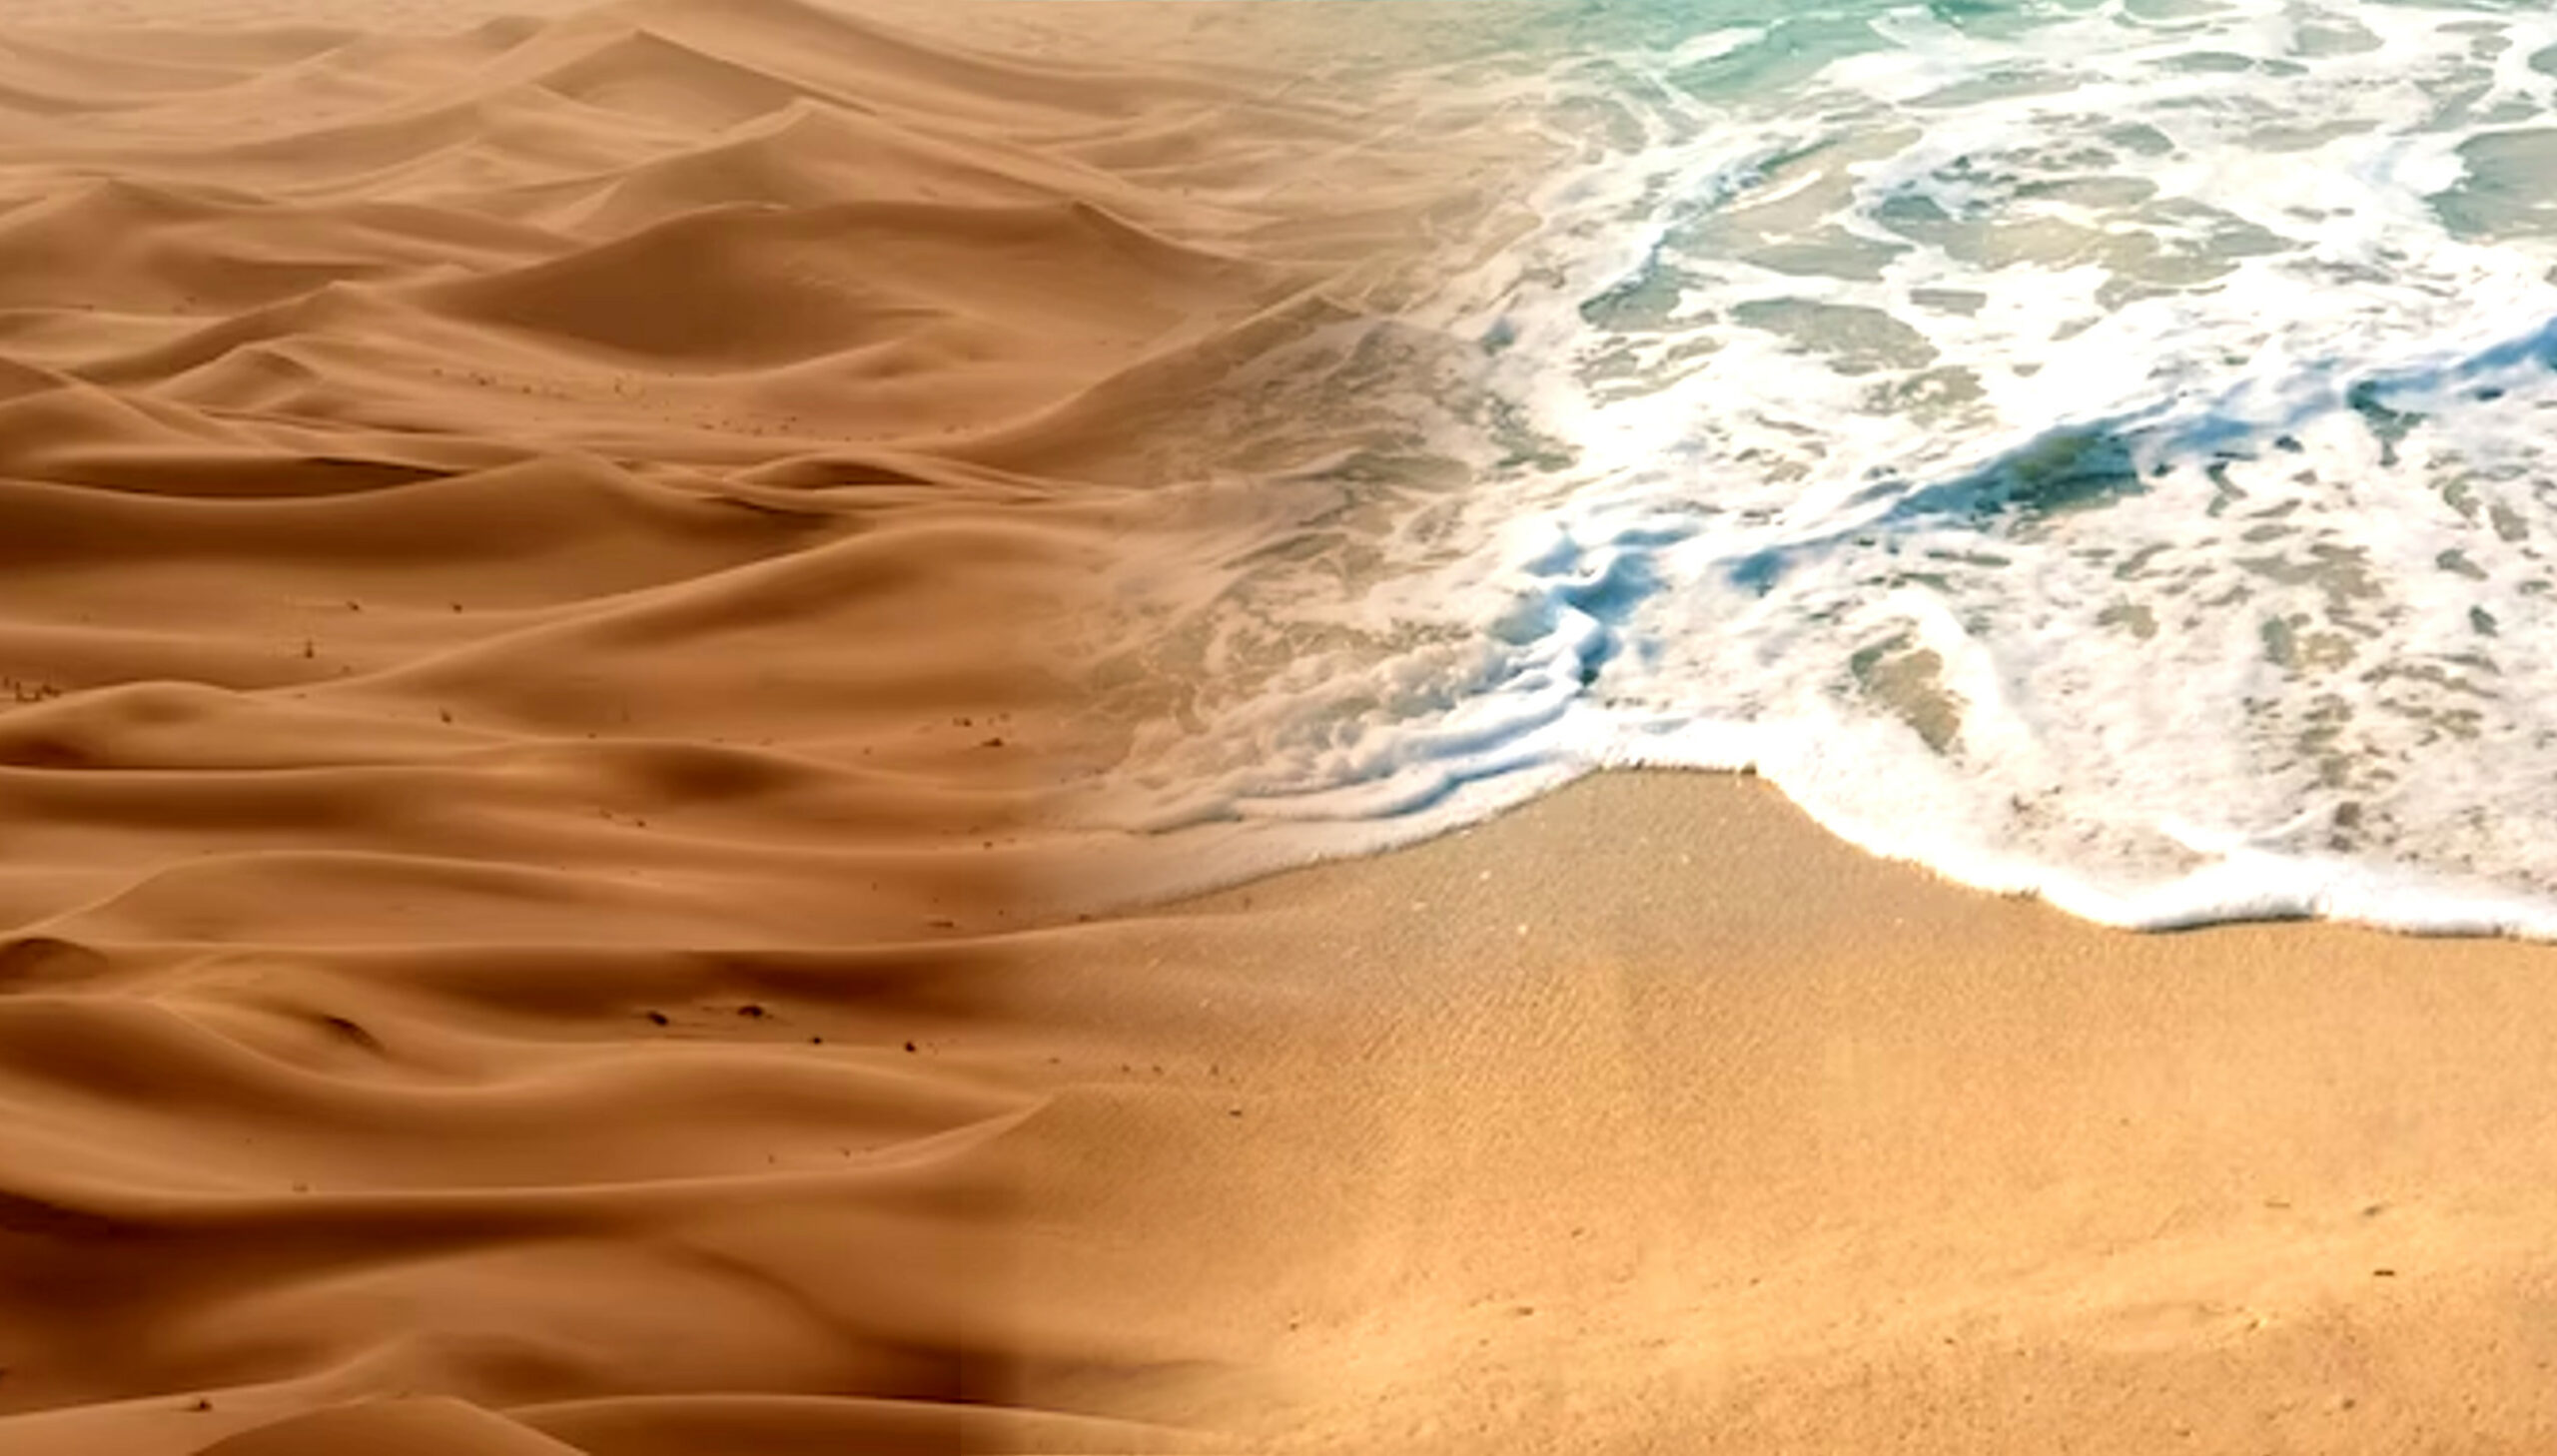 Wüstensand (links) gegen Strandsand (Rechts) Vergleich, der die Unterschiede in Farbe und Textur zeigt.